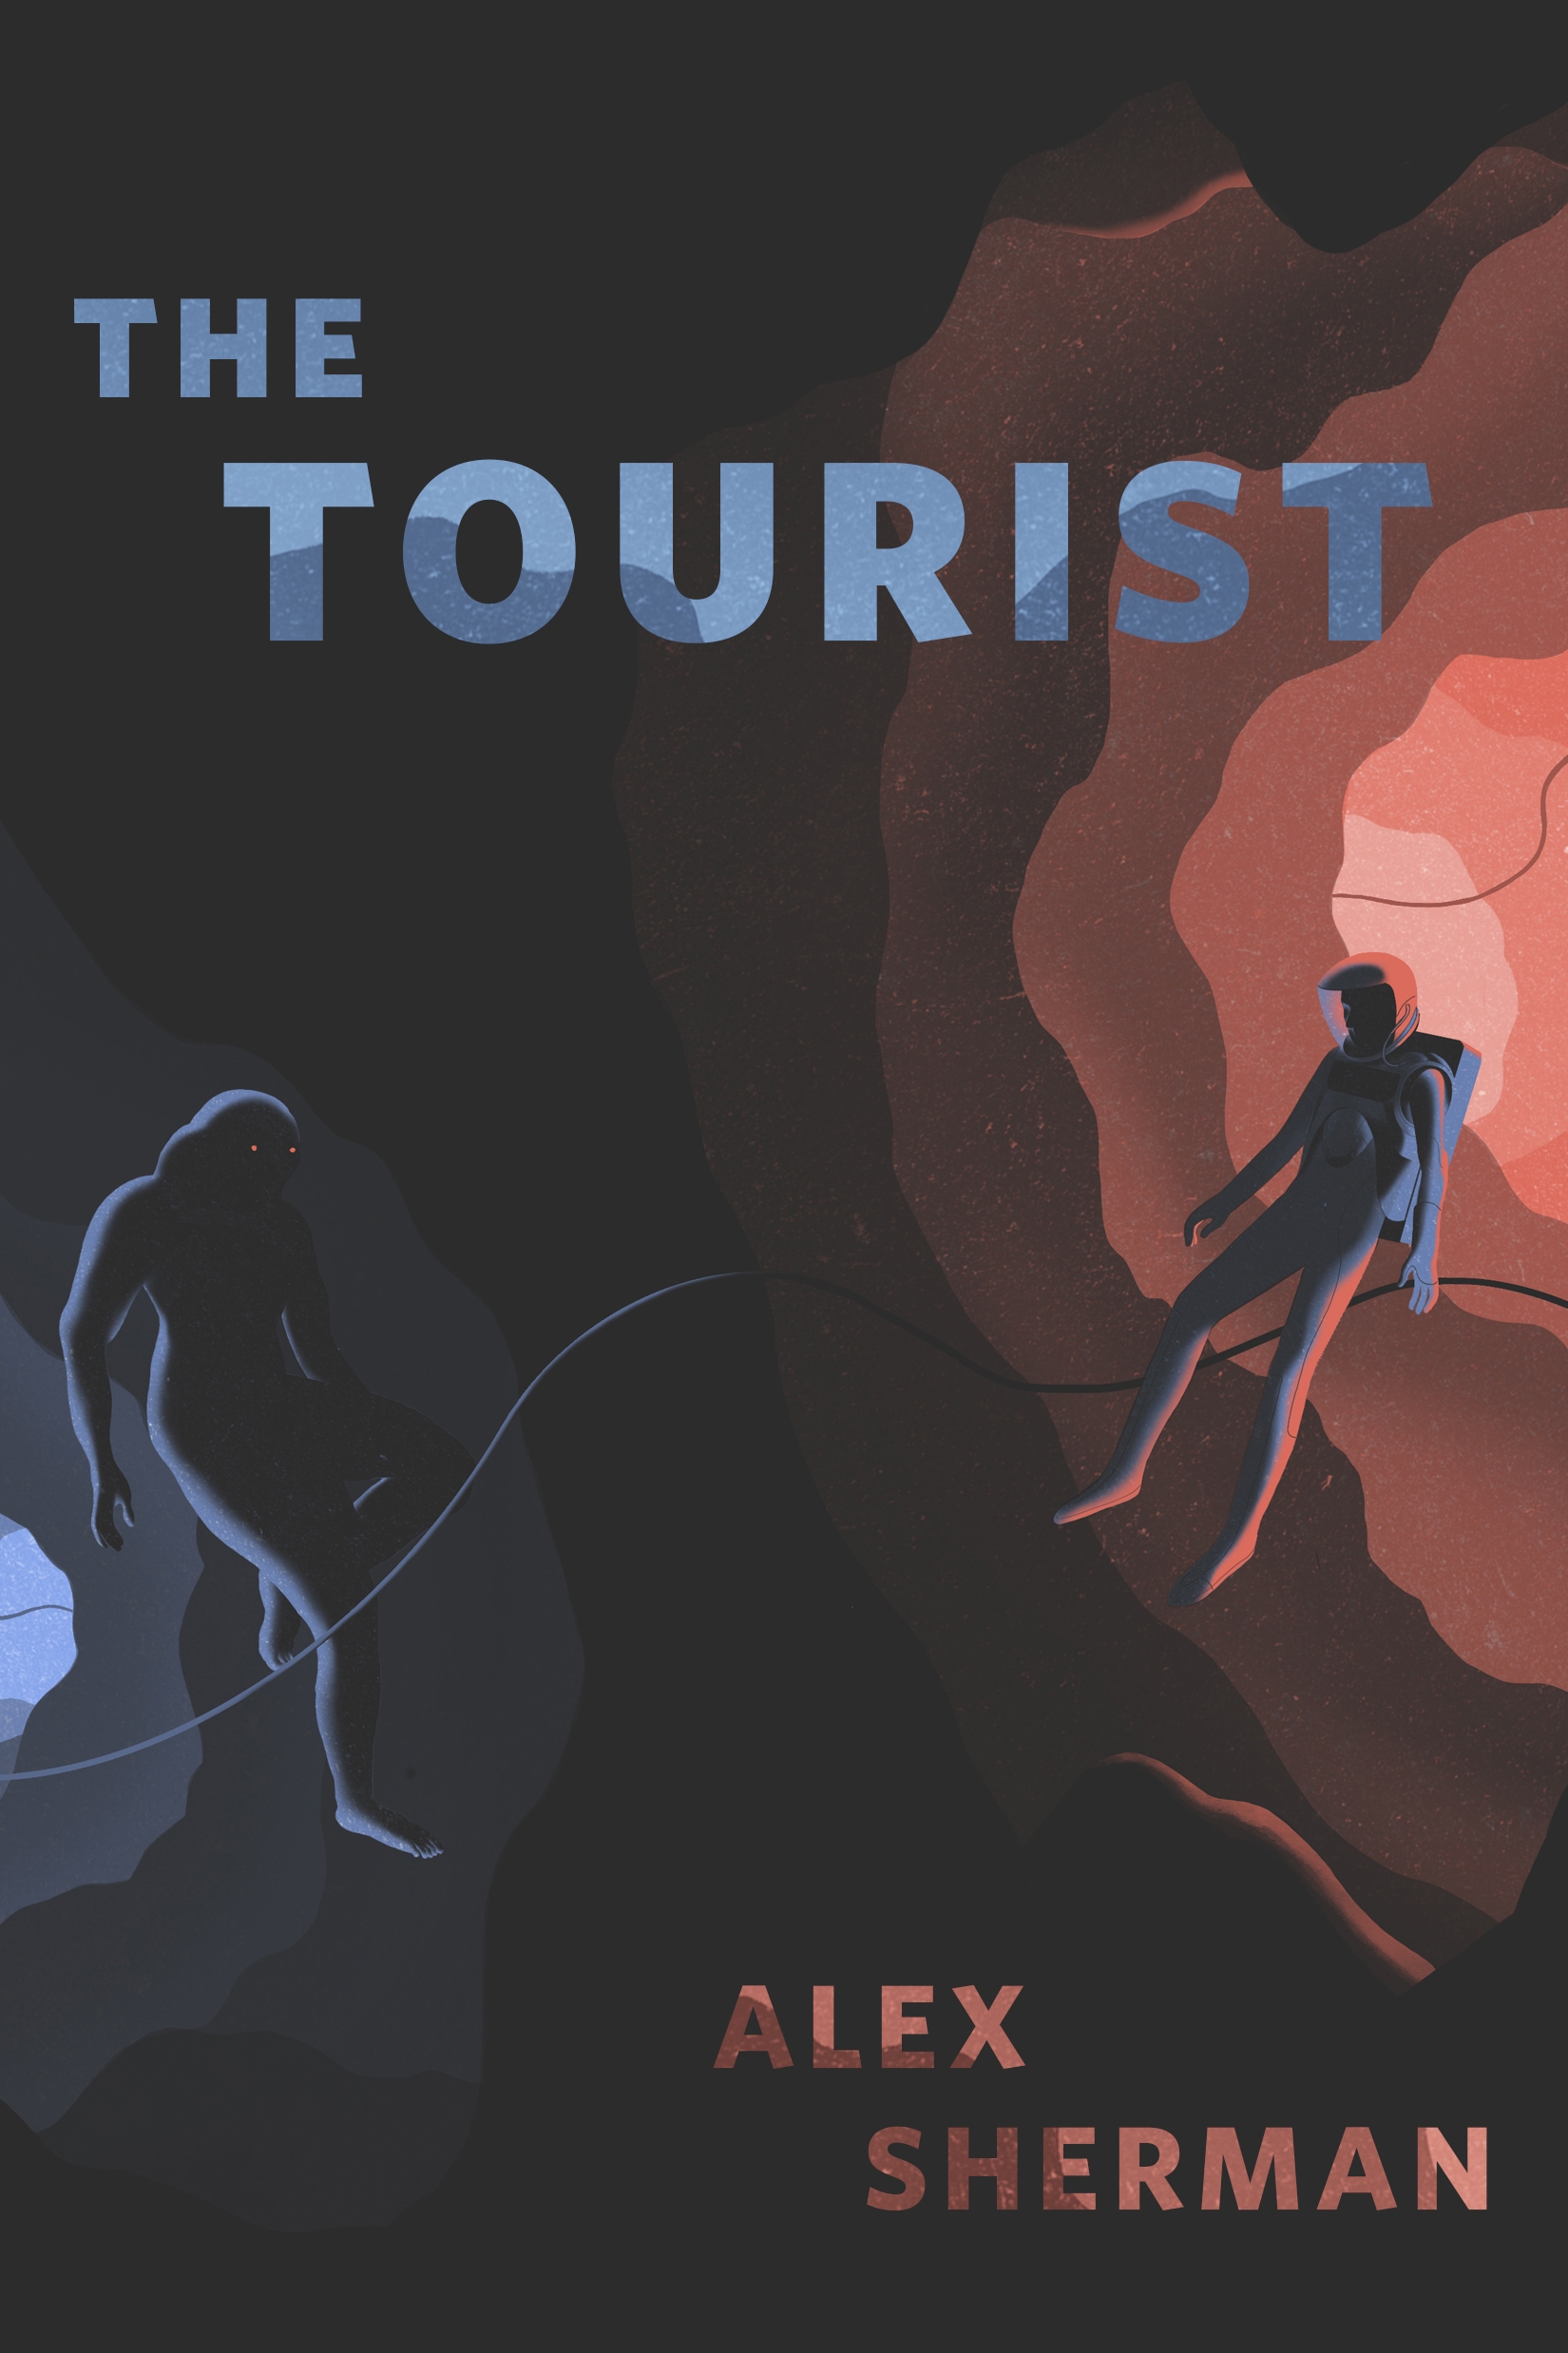 The Tourist : A Tor.com Original by Alex Sherman